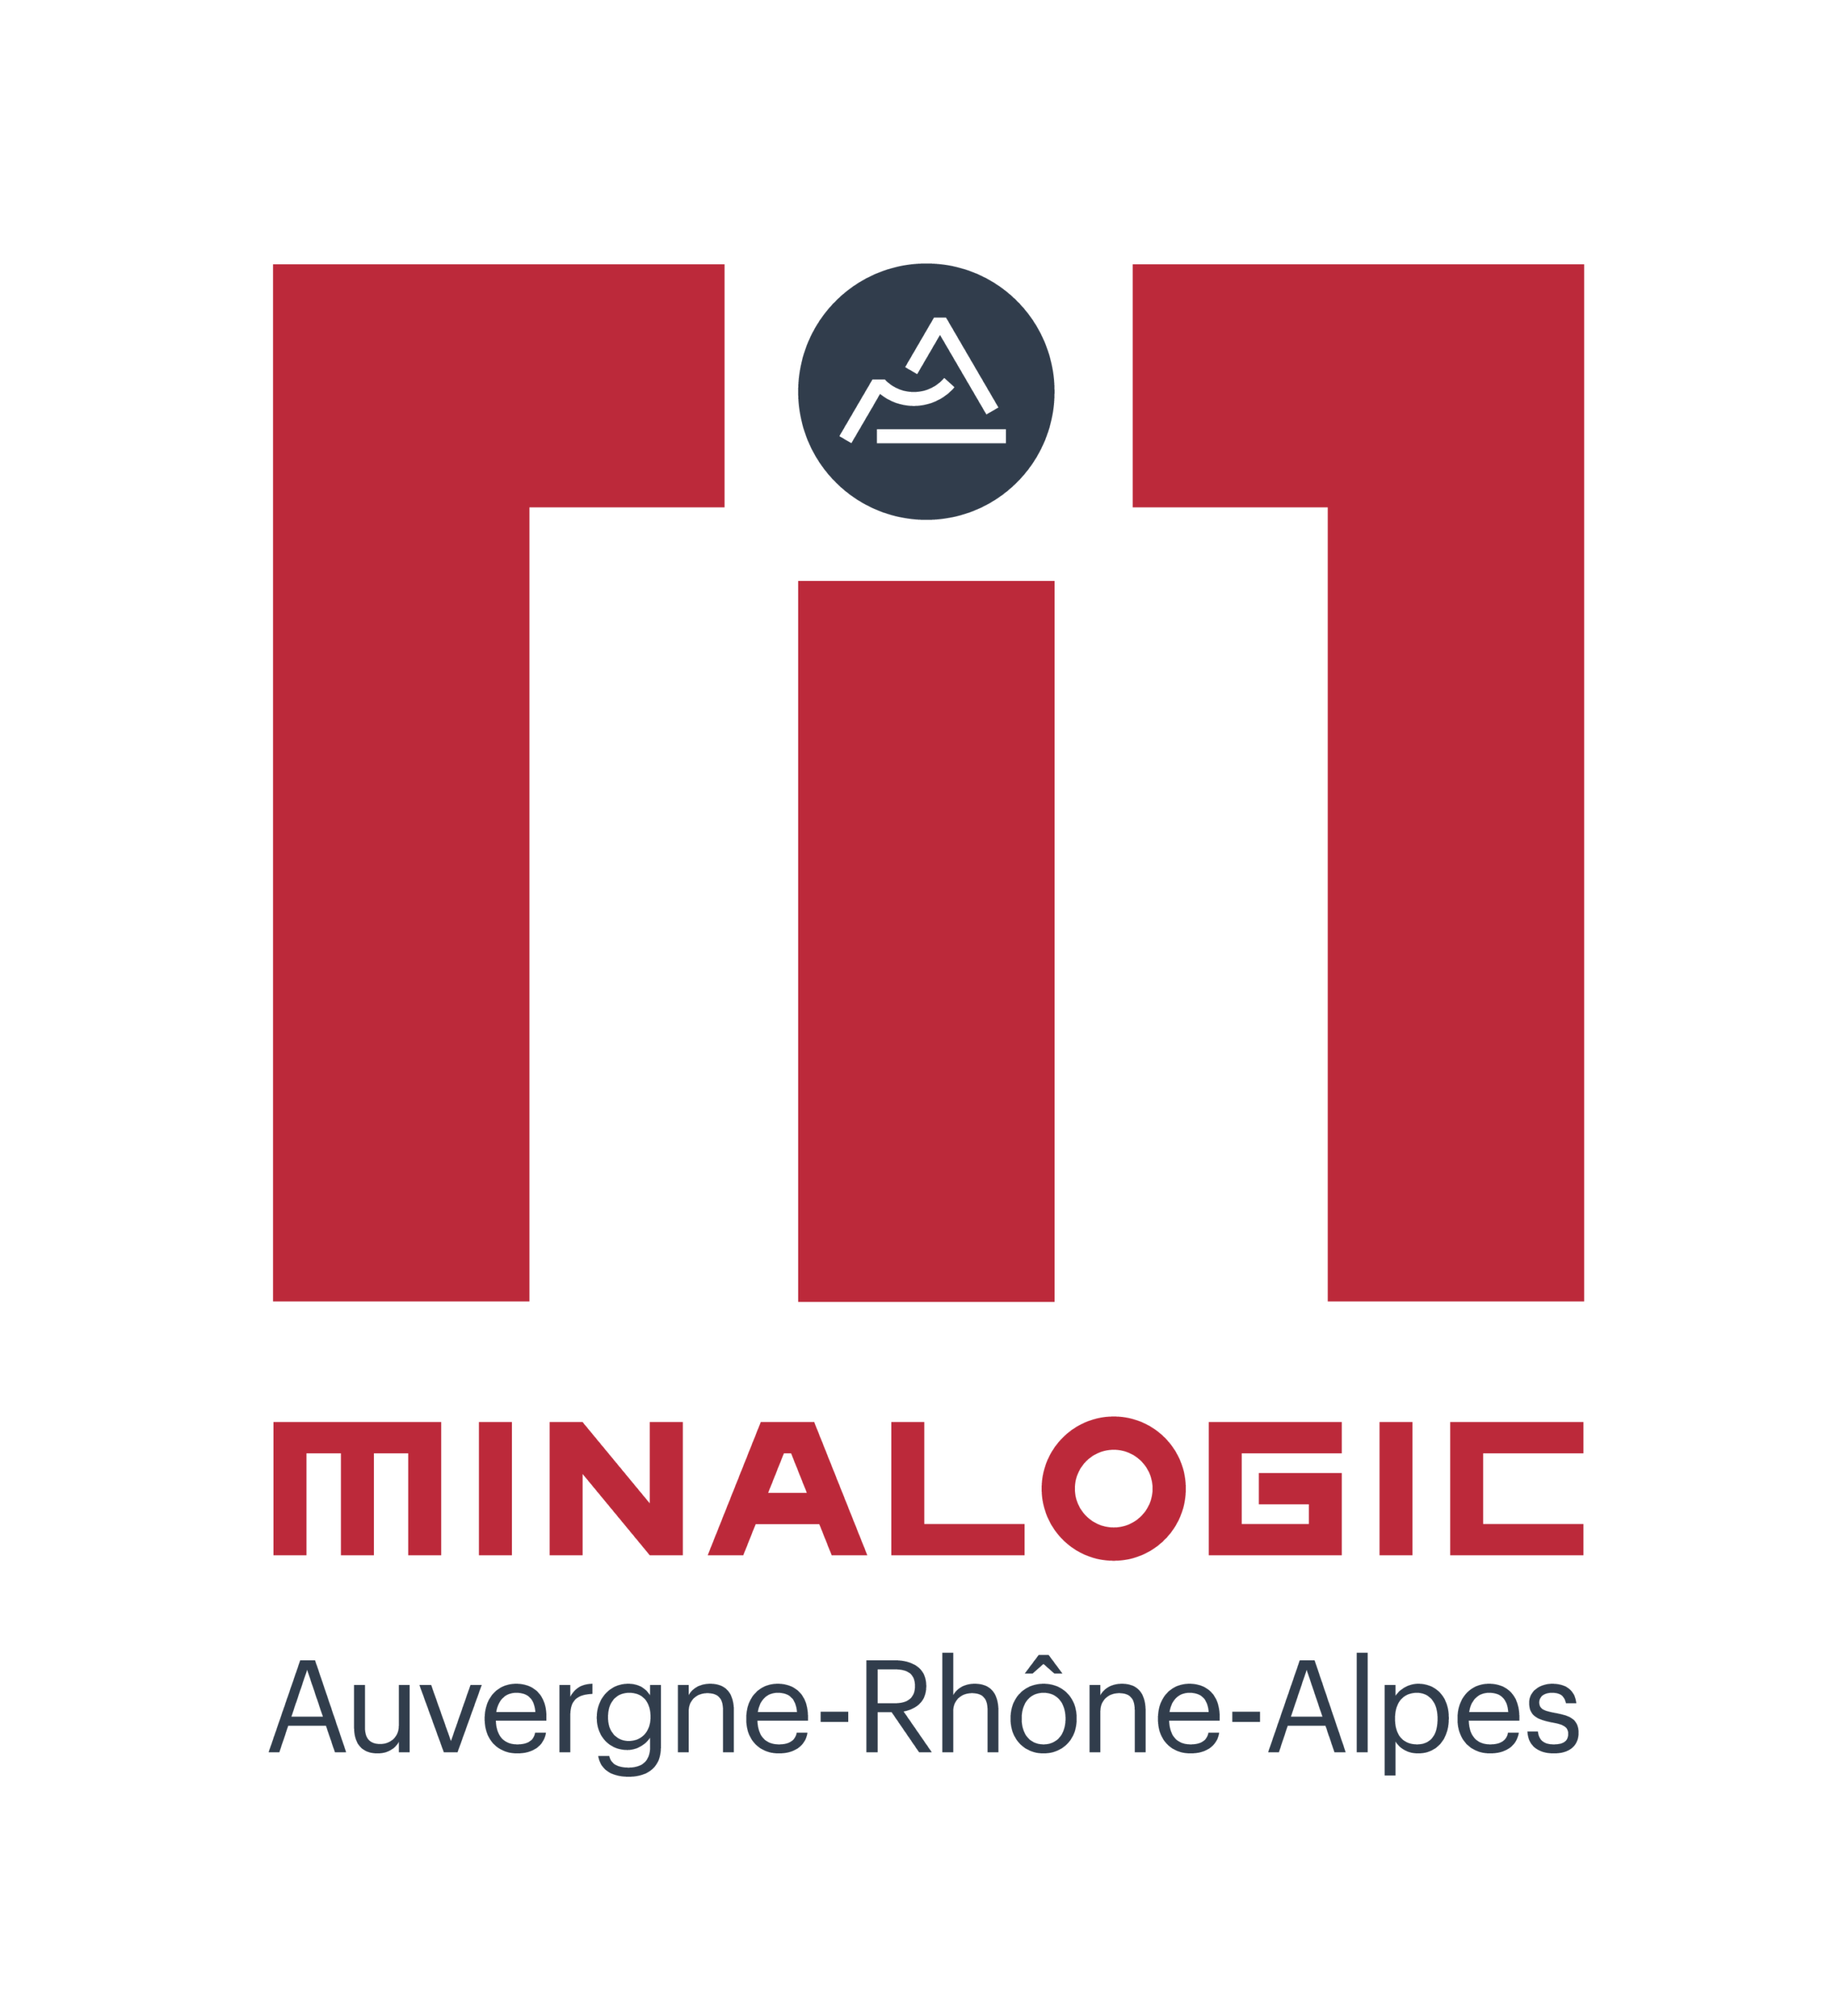 minalogic-logo